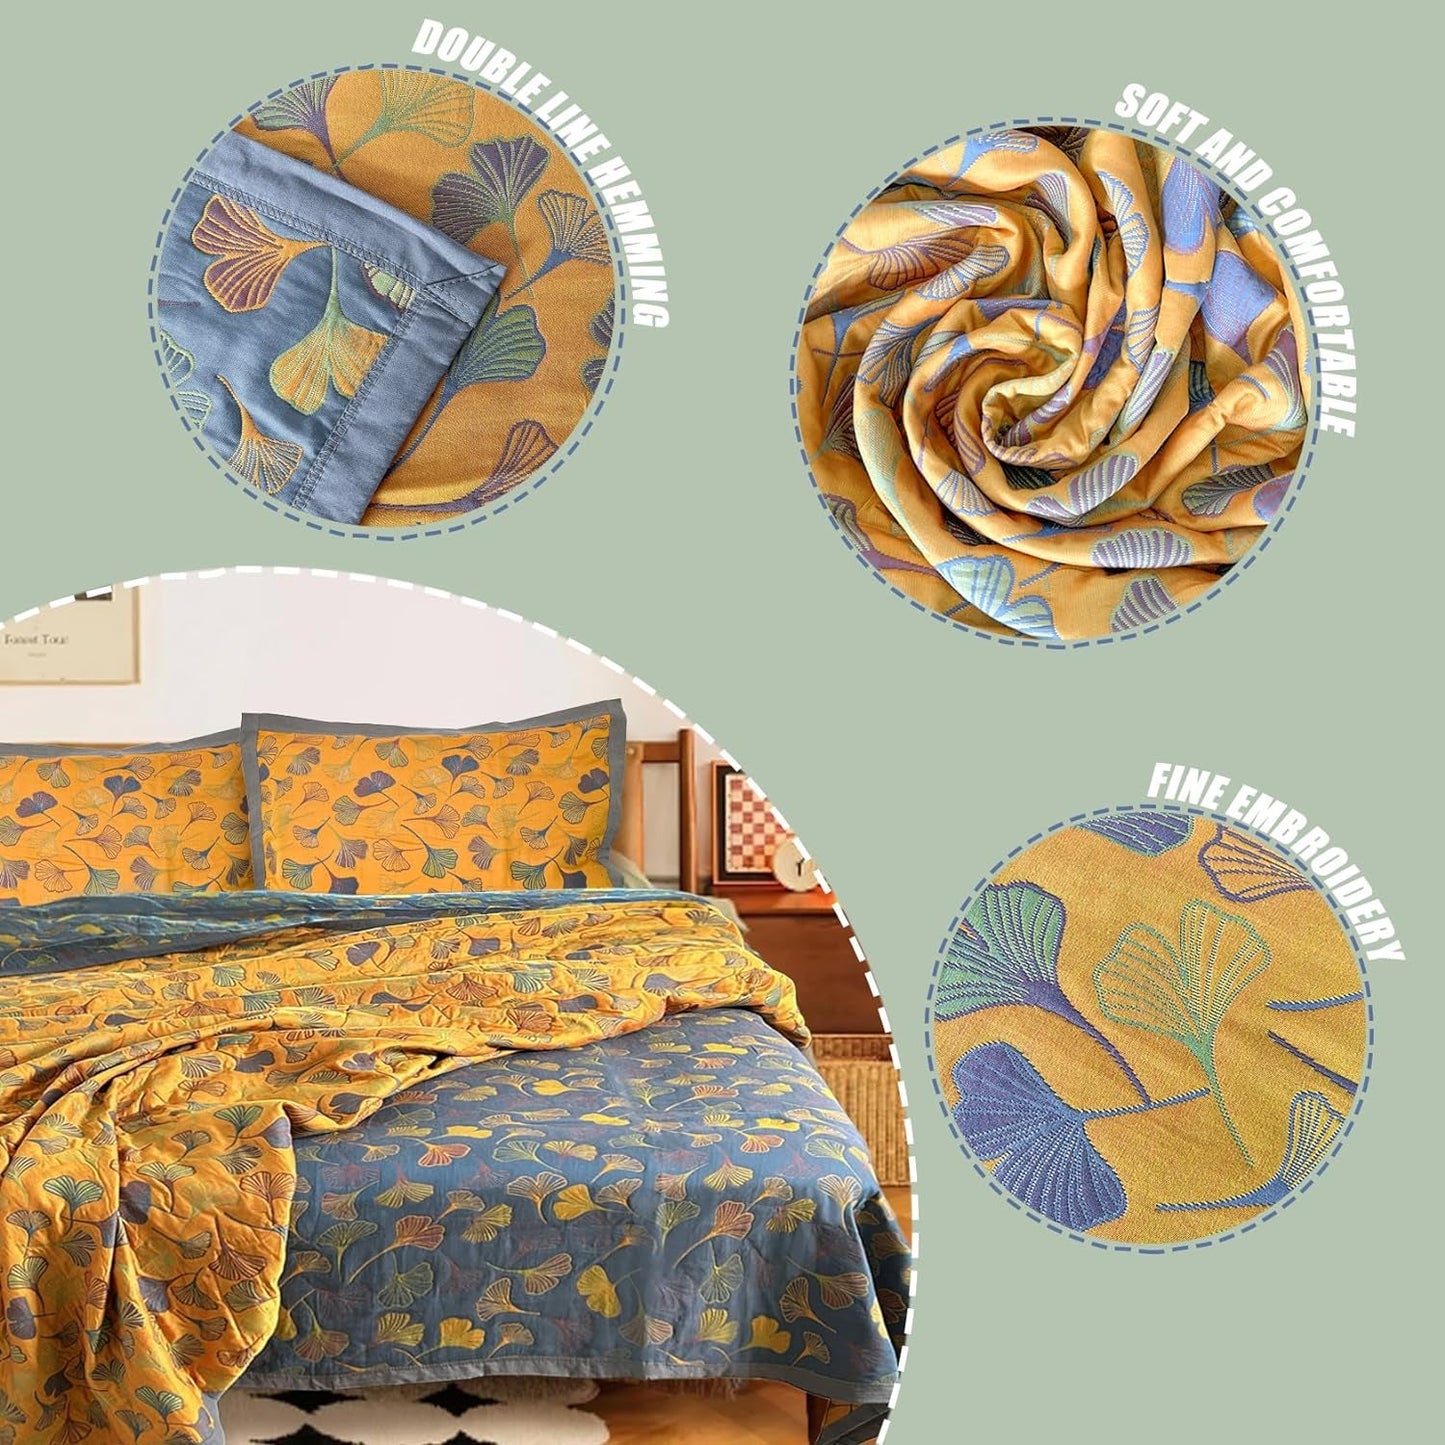 3 Piece Ginkgo Quilt Set with 2 Pillow Shams Queen Reversible Cotton Quilt Bedding Set Lightweight Bedspread Coverlet Sets Queen Size (Queen Quilt)